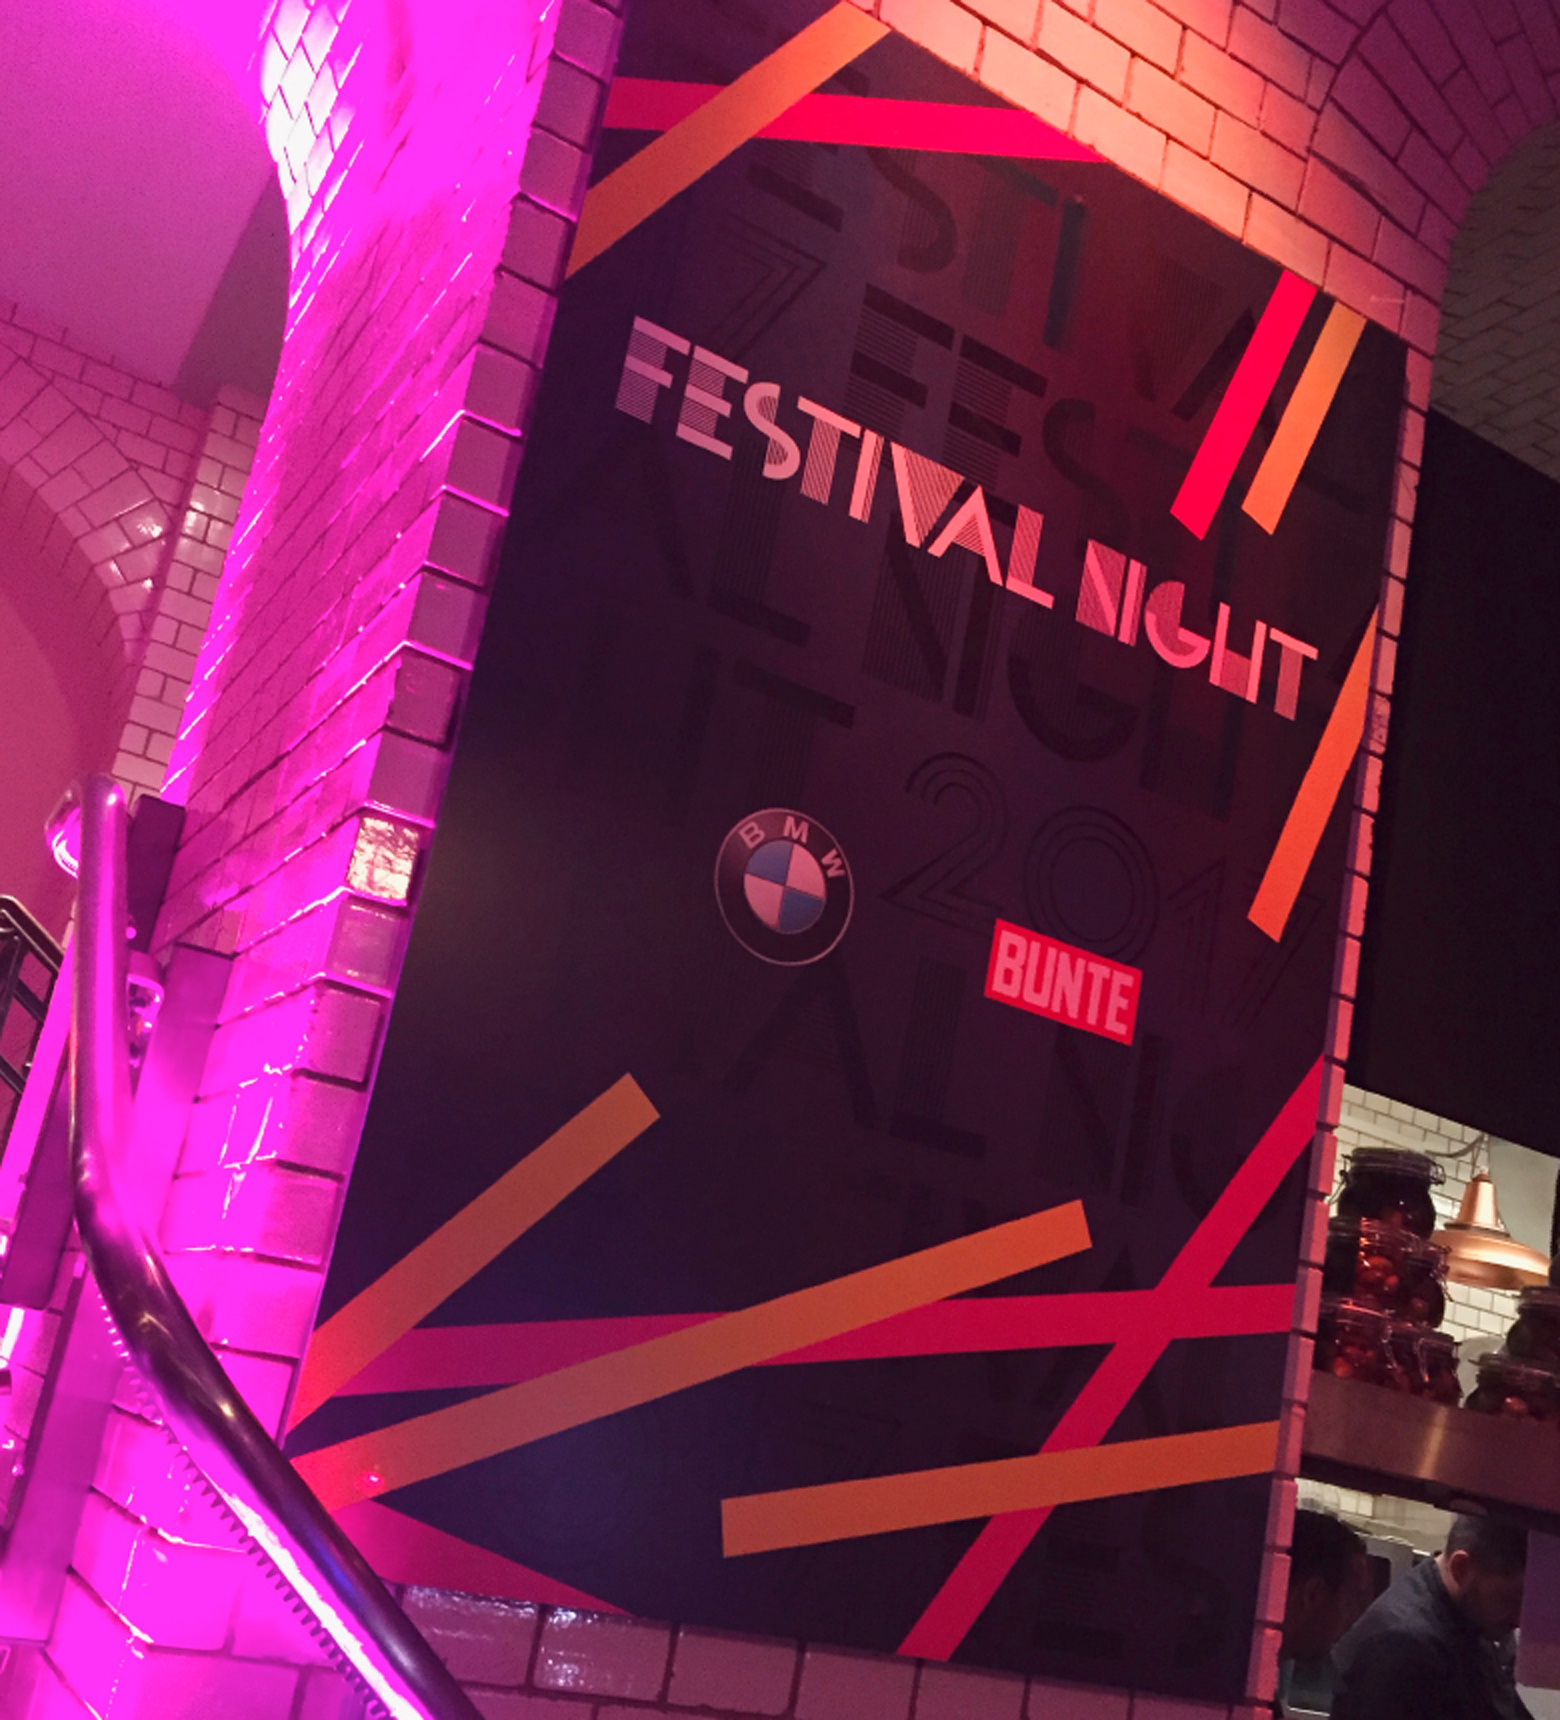 Festival Night 2017 – BURDA